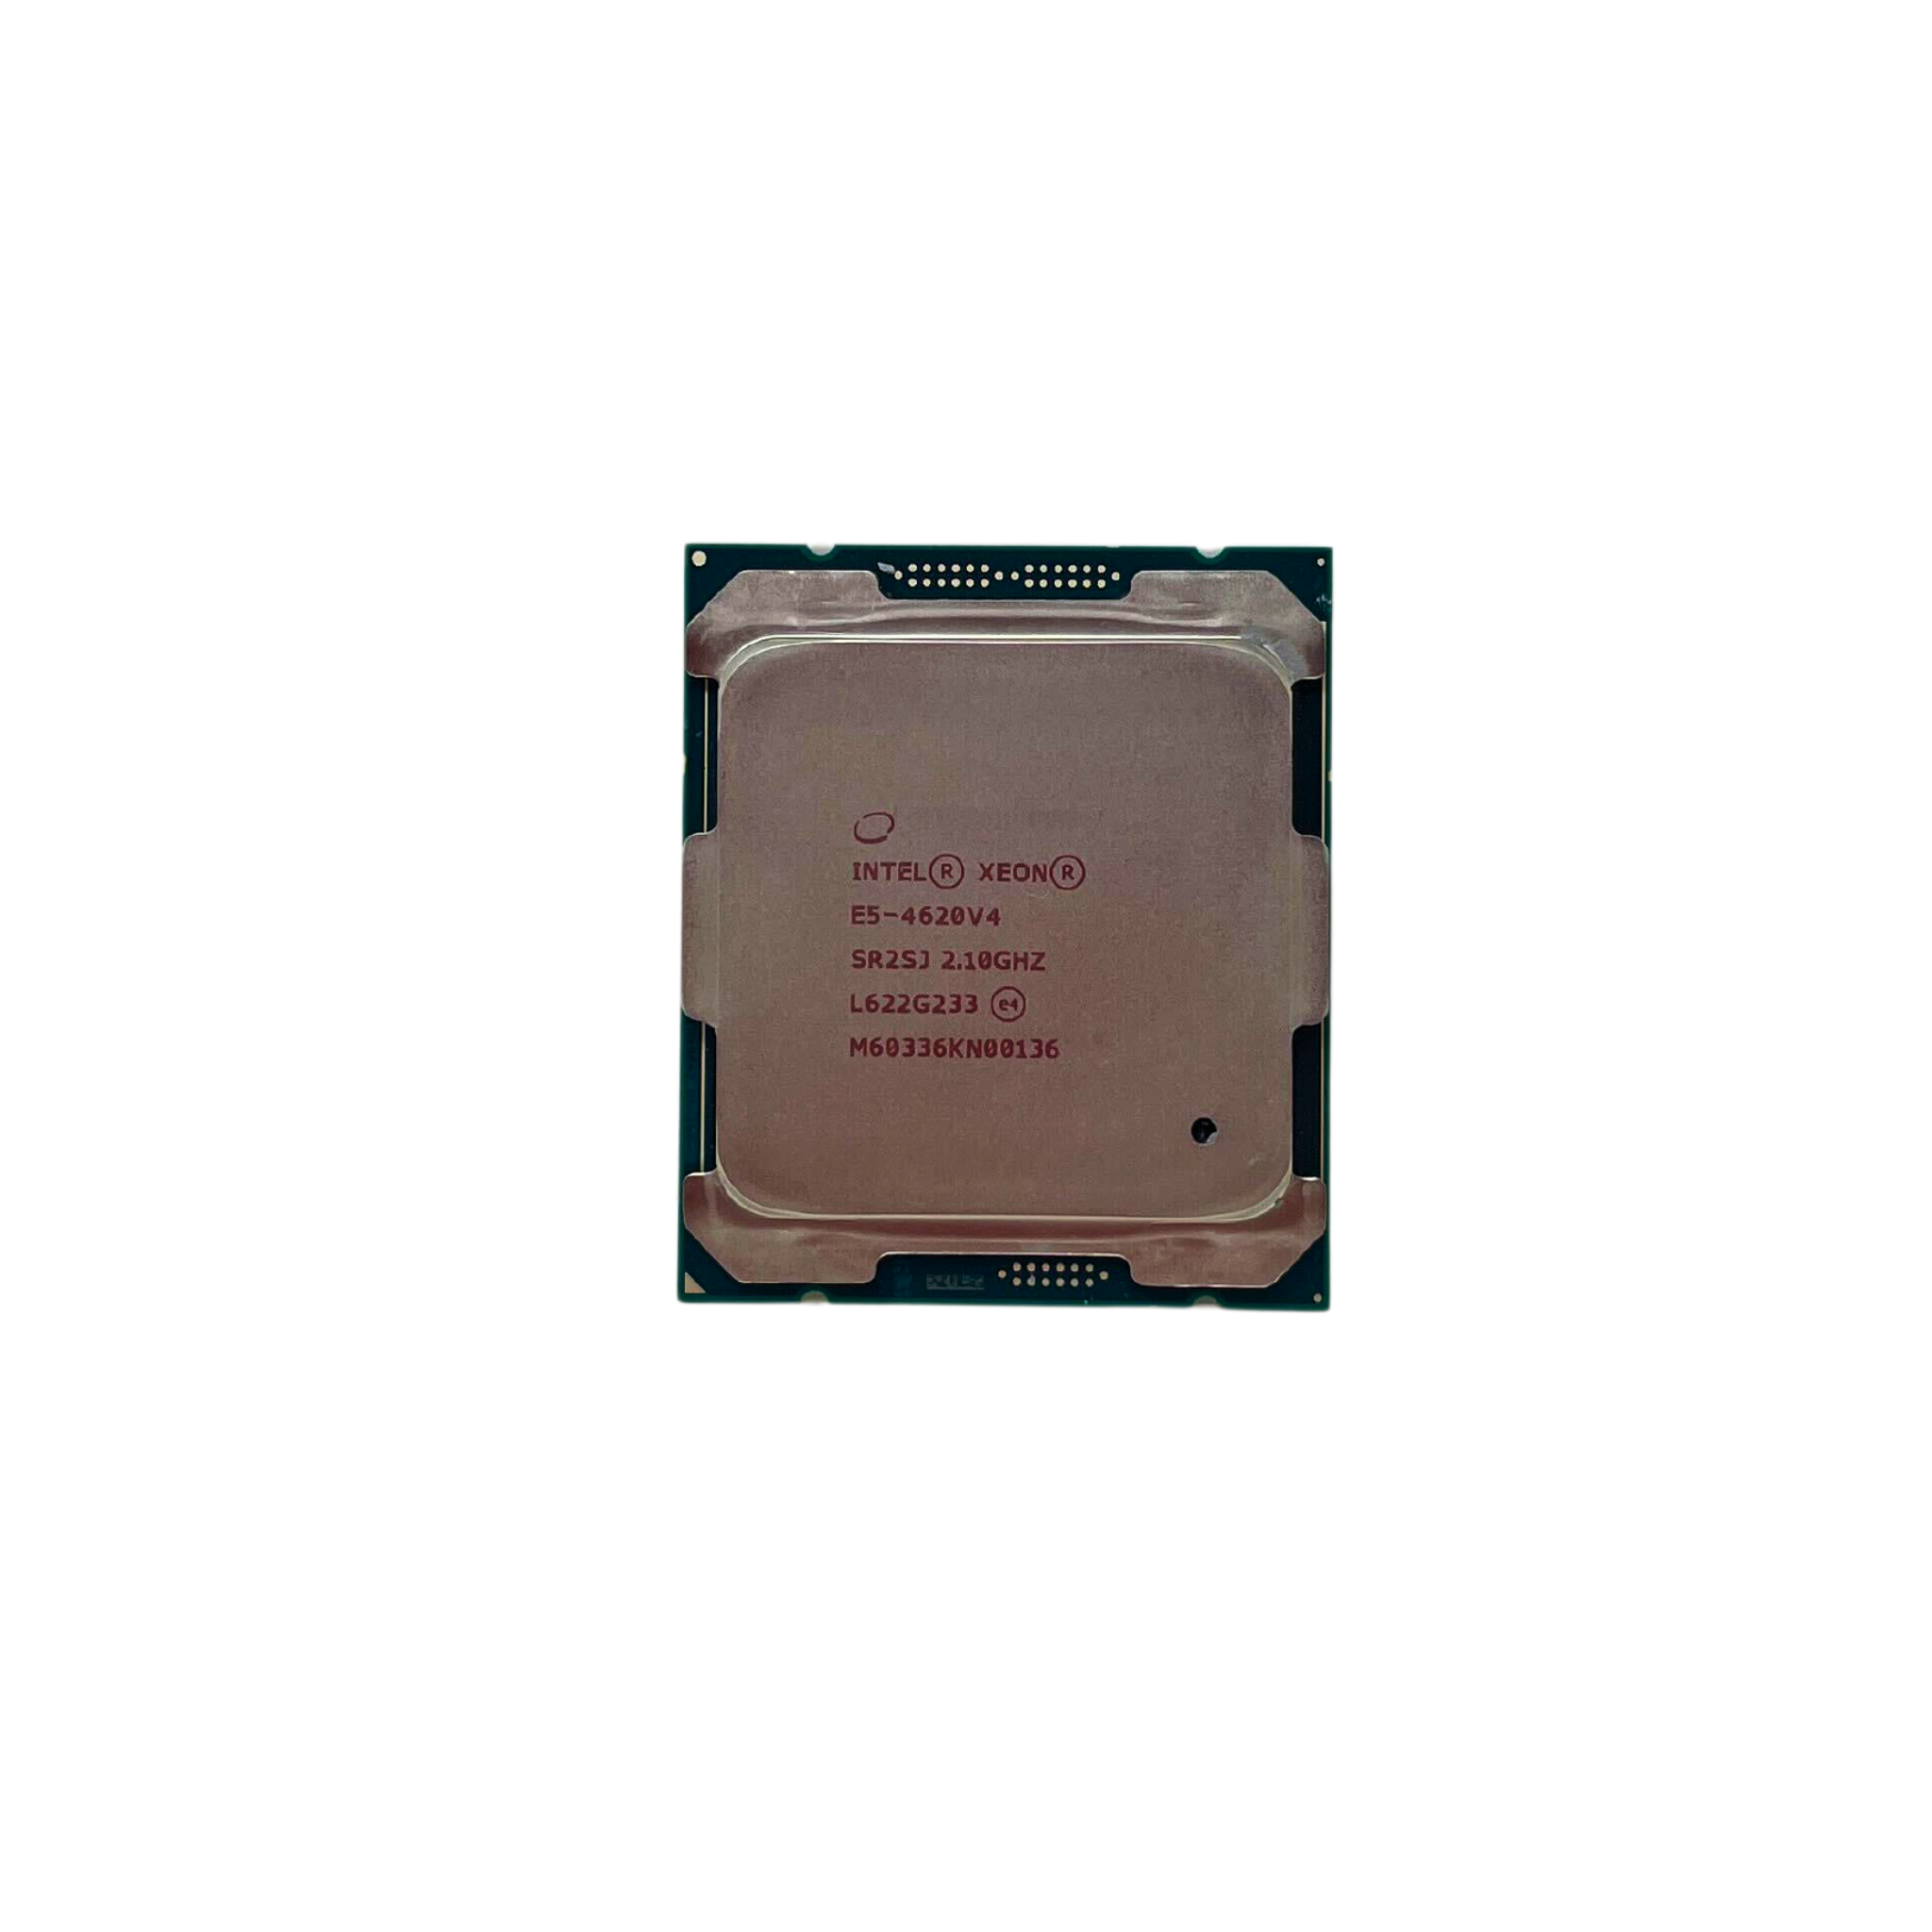  Intel Xeon E5-4620 V4  10-Core 2.10GHz FCLGA-2011-3 Processor (Xeon E5-4620 V4)